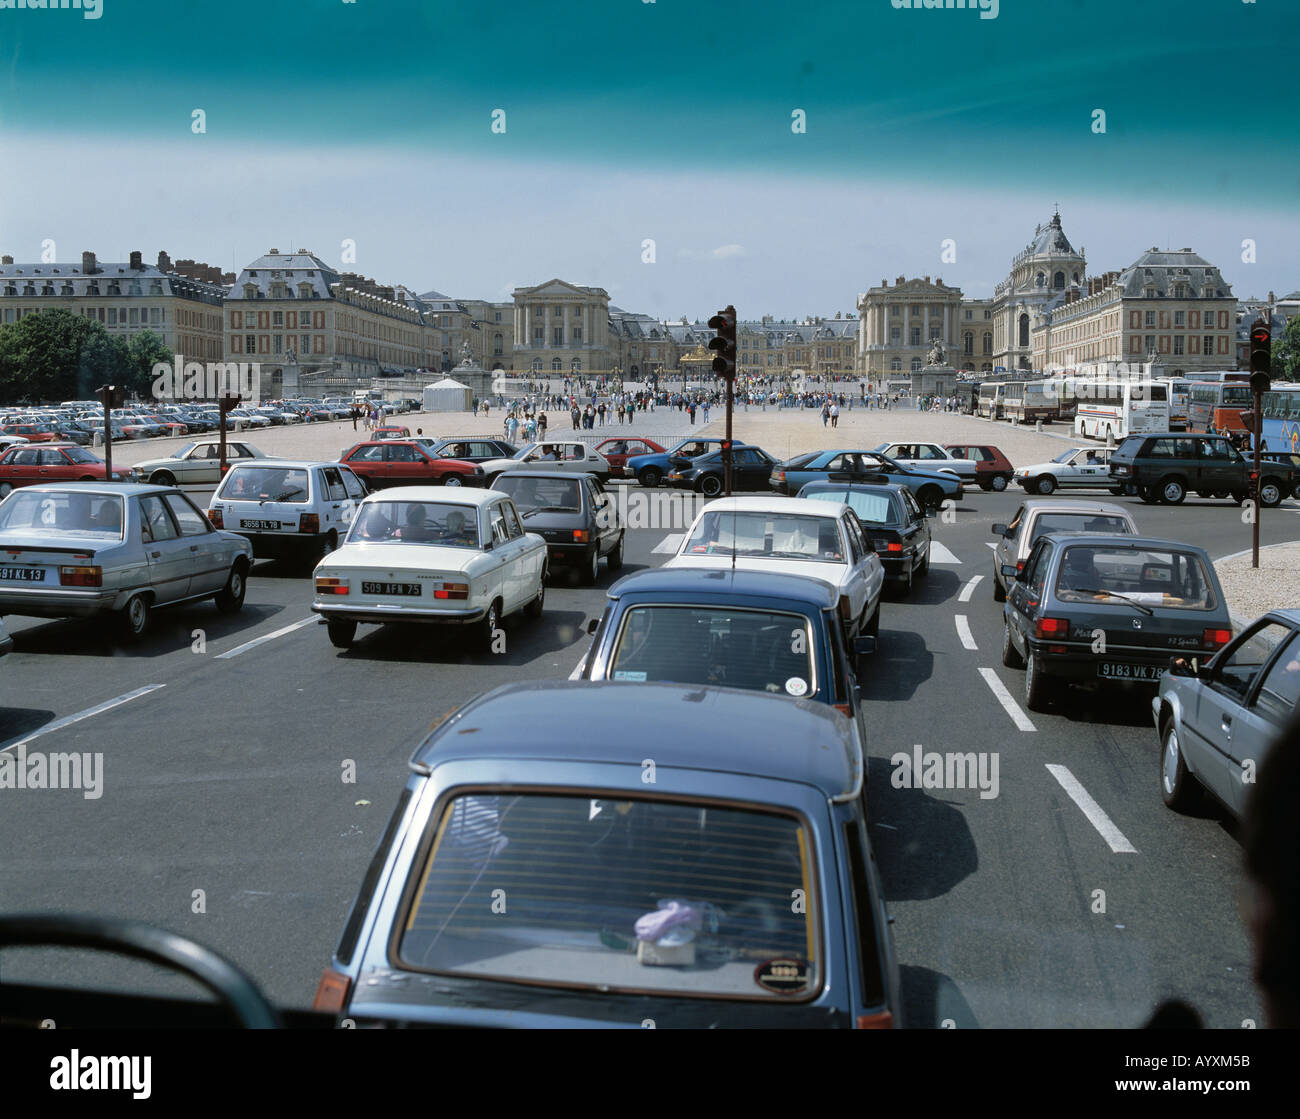 Miglior Autoverkehr vor dem Schloss in Versailles, Seine-et-Oise, Blick durch gefaerbte Windschutzscheibe eines autobus, getoente Sonnenschutzschei Foto Stock